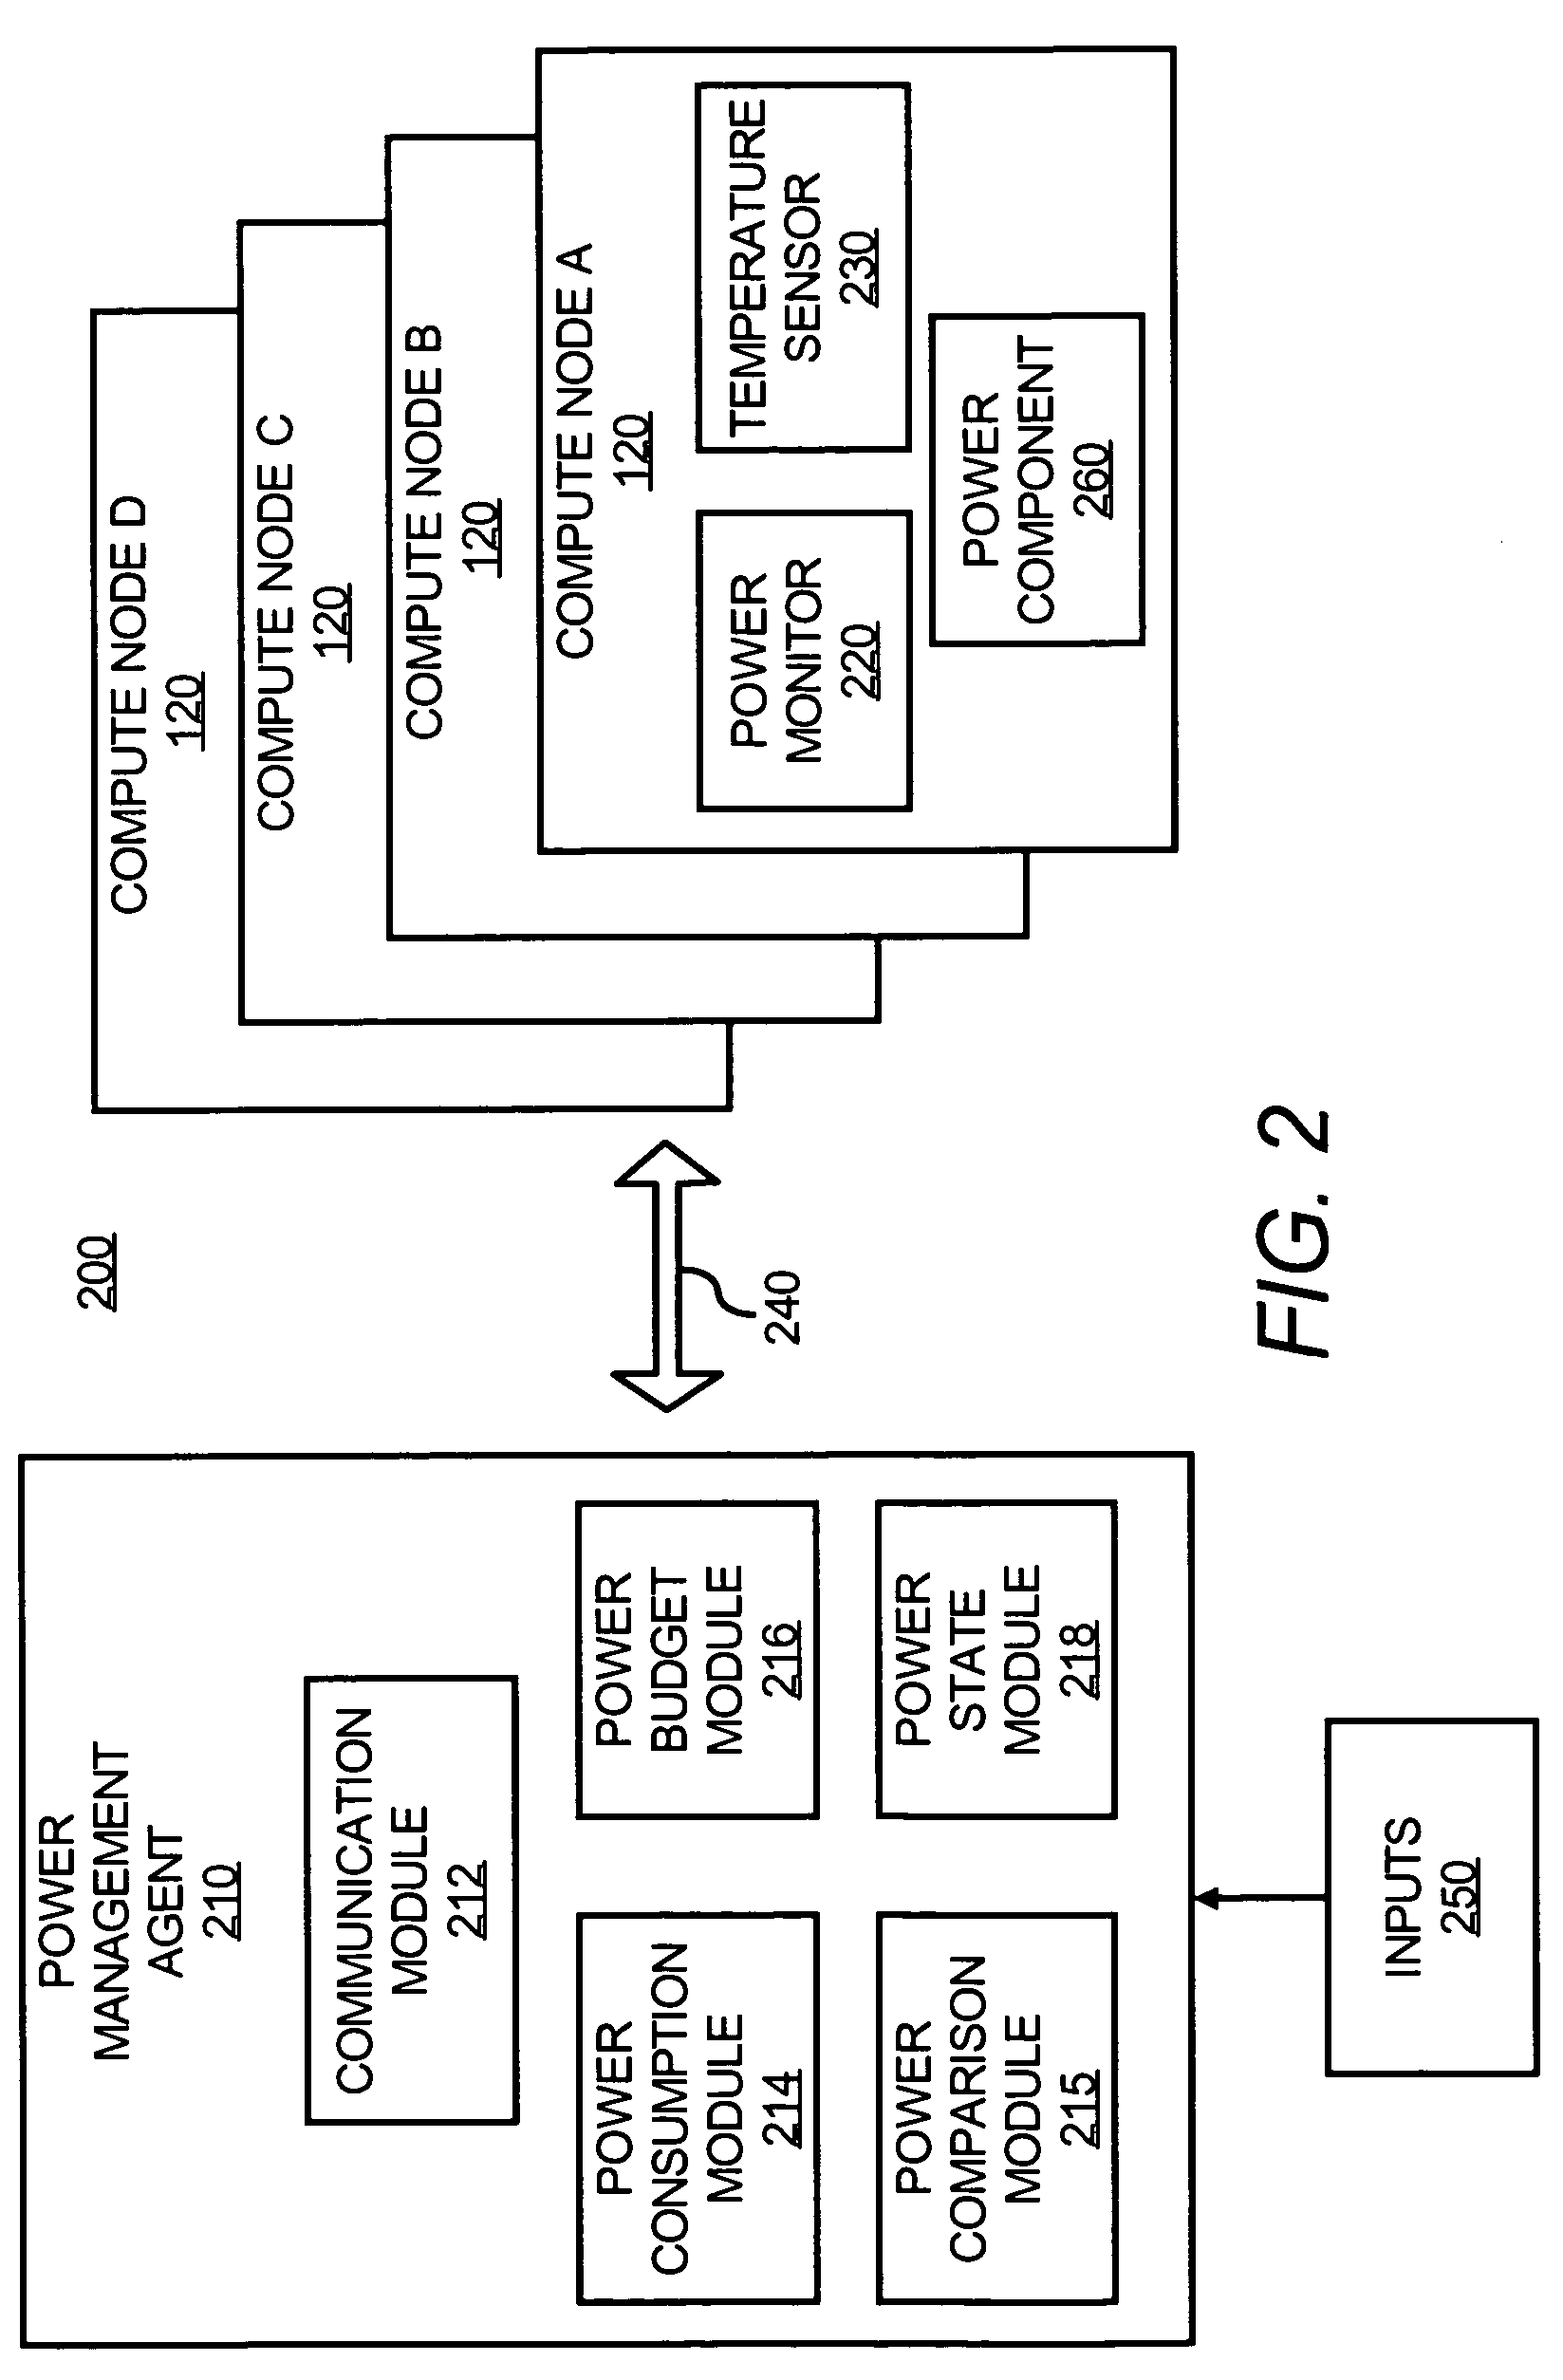 Power consumption management among compute nodes